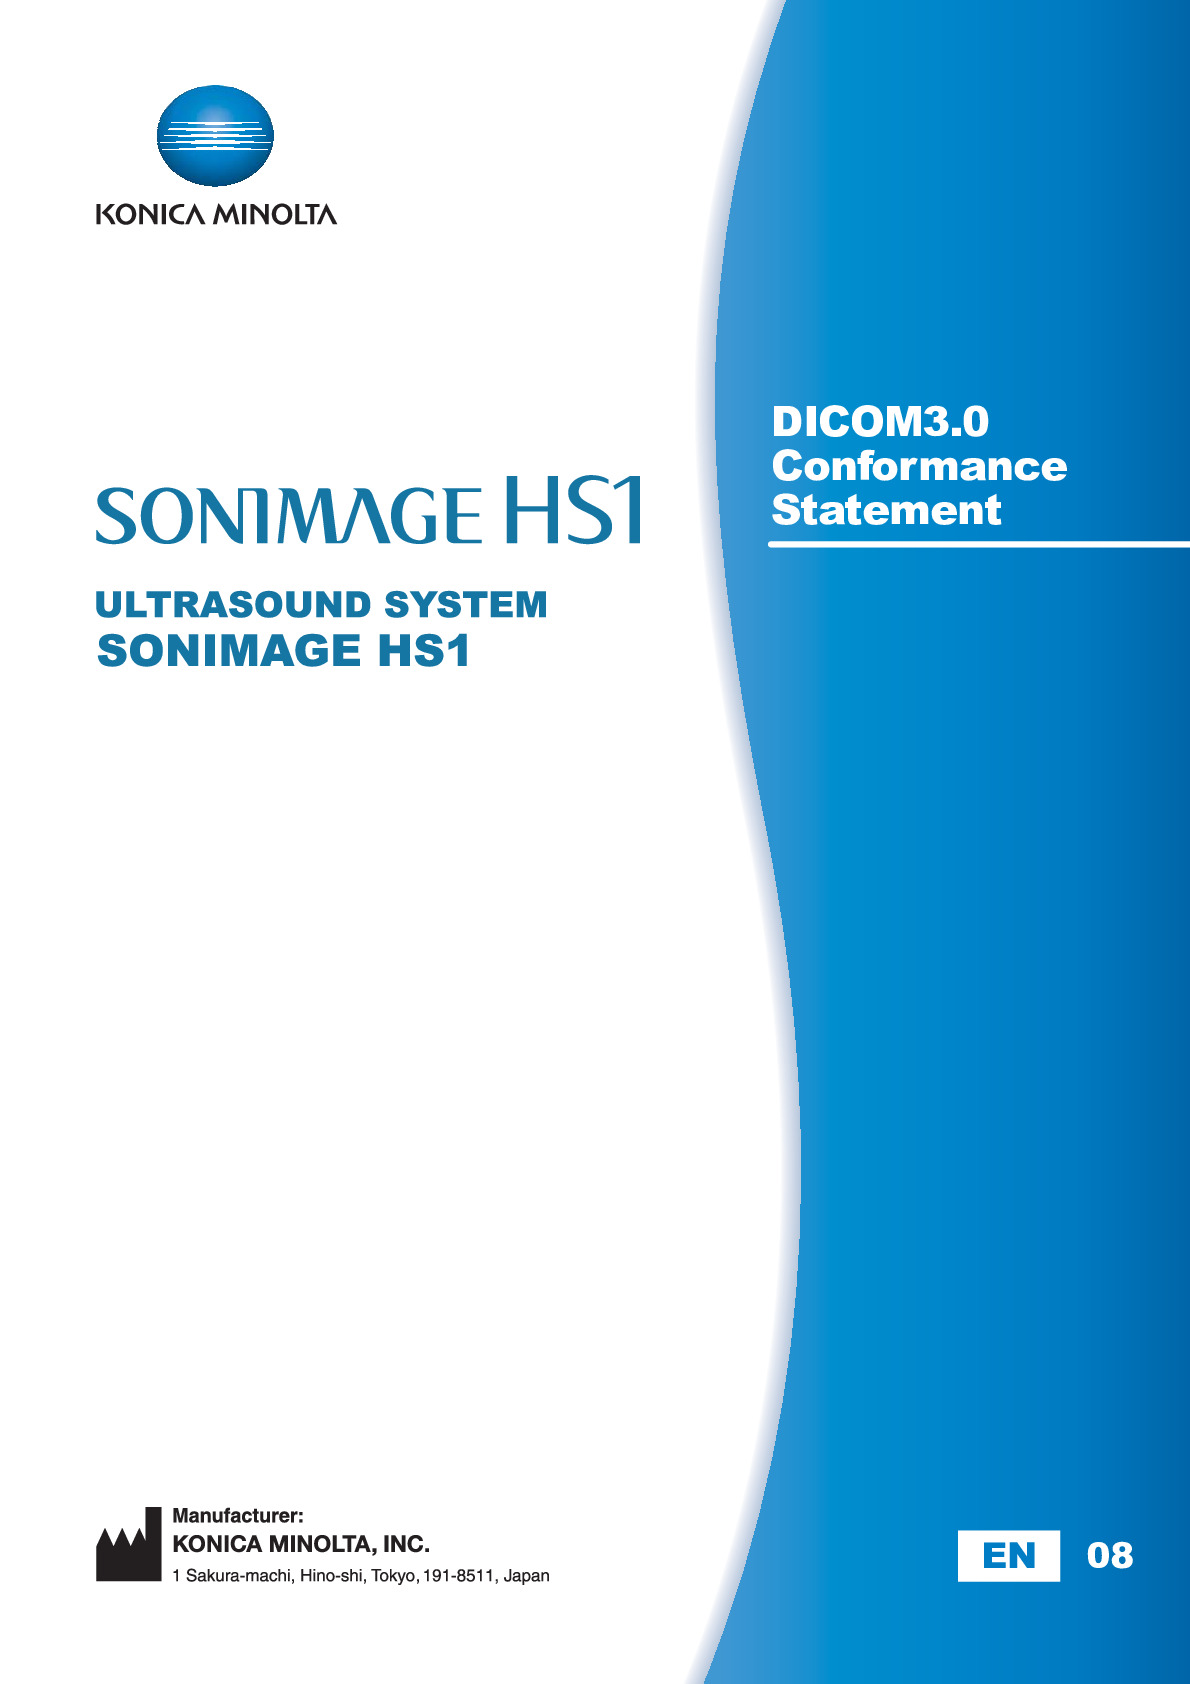 SONIMAGE HS1 DICOM Conformance Statement V1.41 A7APEA01_EN08